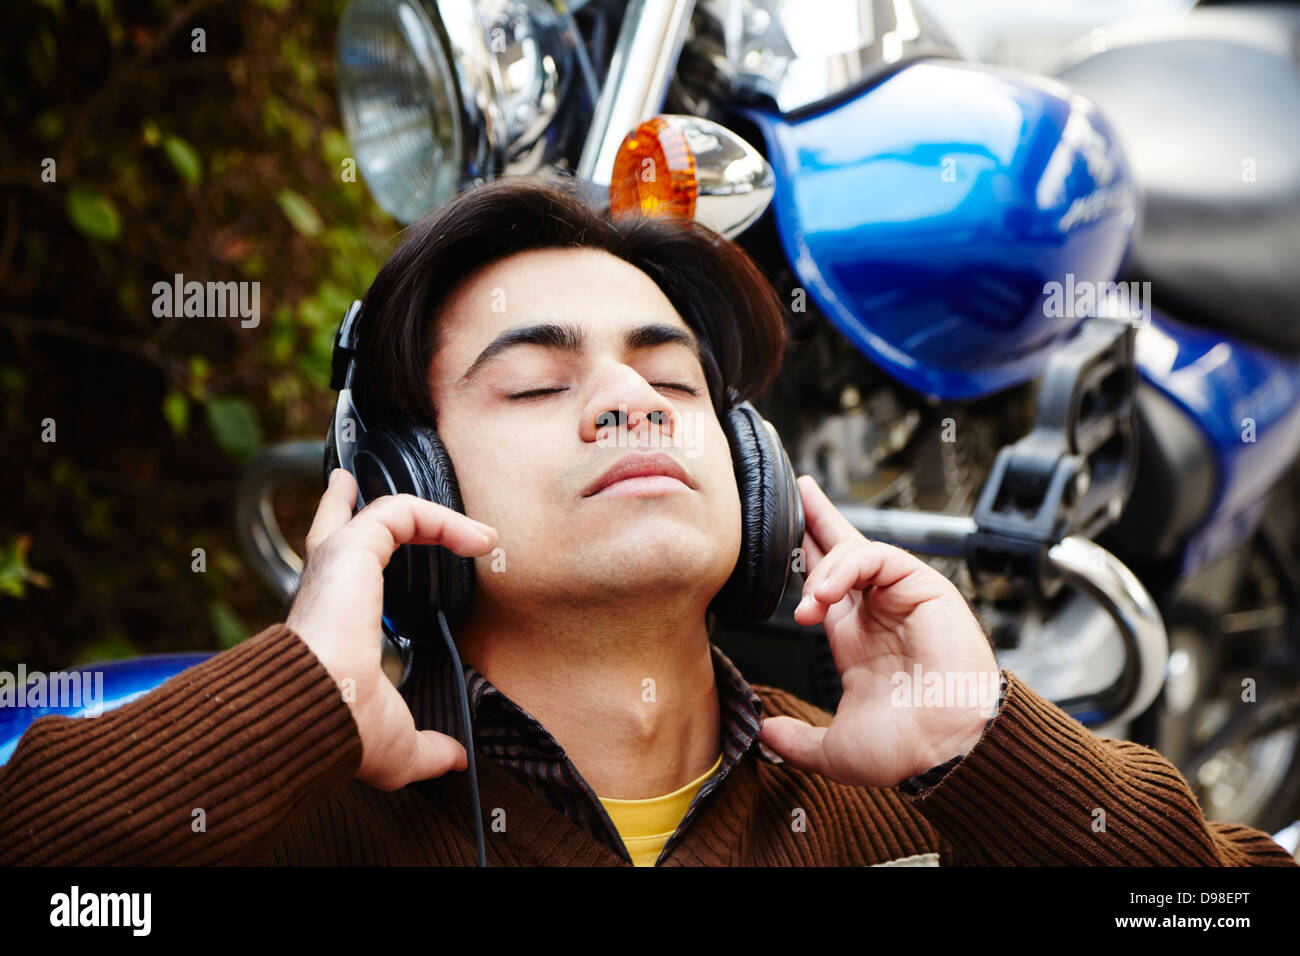 L'homme écoute de la musique avec un casque moto à côté Photo Stock - Alamy